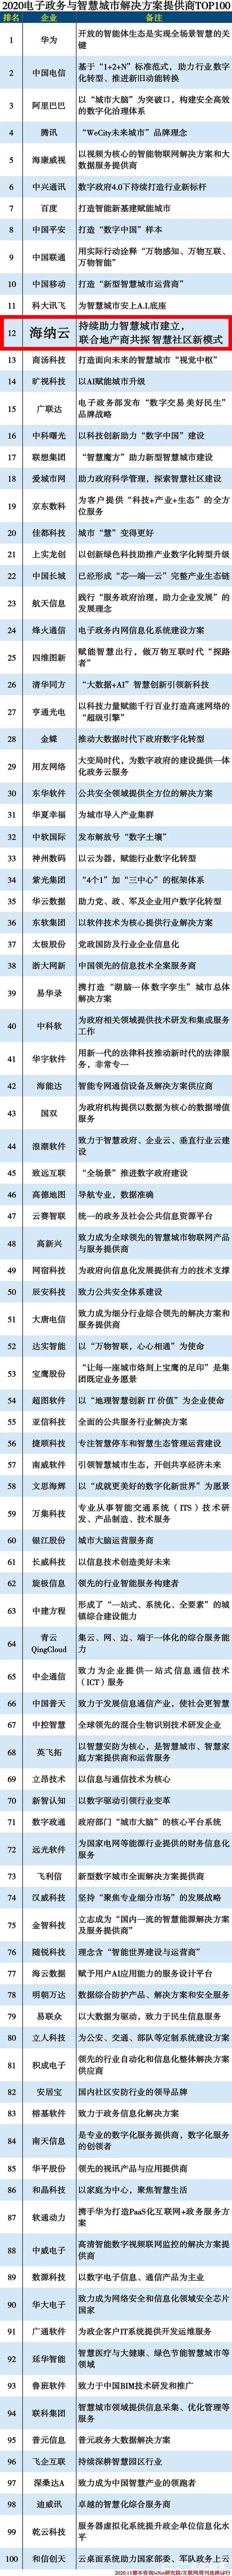 海尔·海纳云成功上榜“2020电子政务与智慧城市解决方案提供商TOP100”，并跻身TOP20